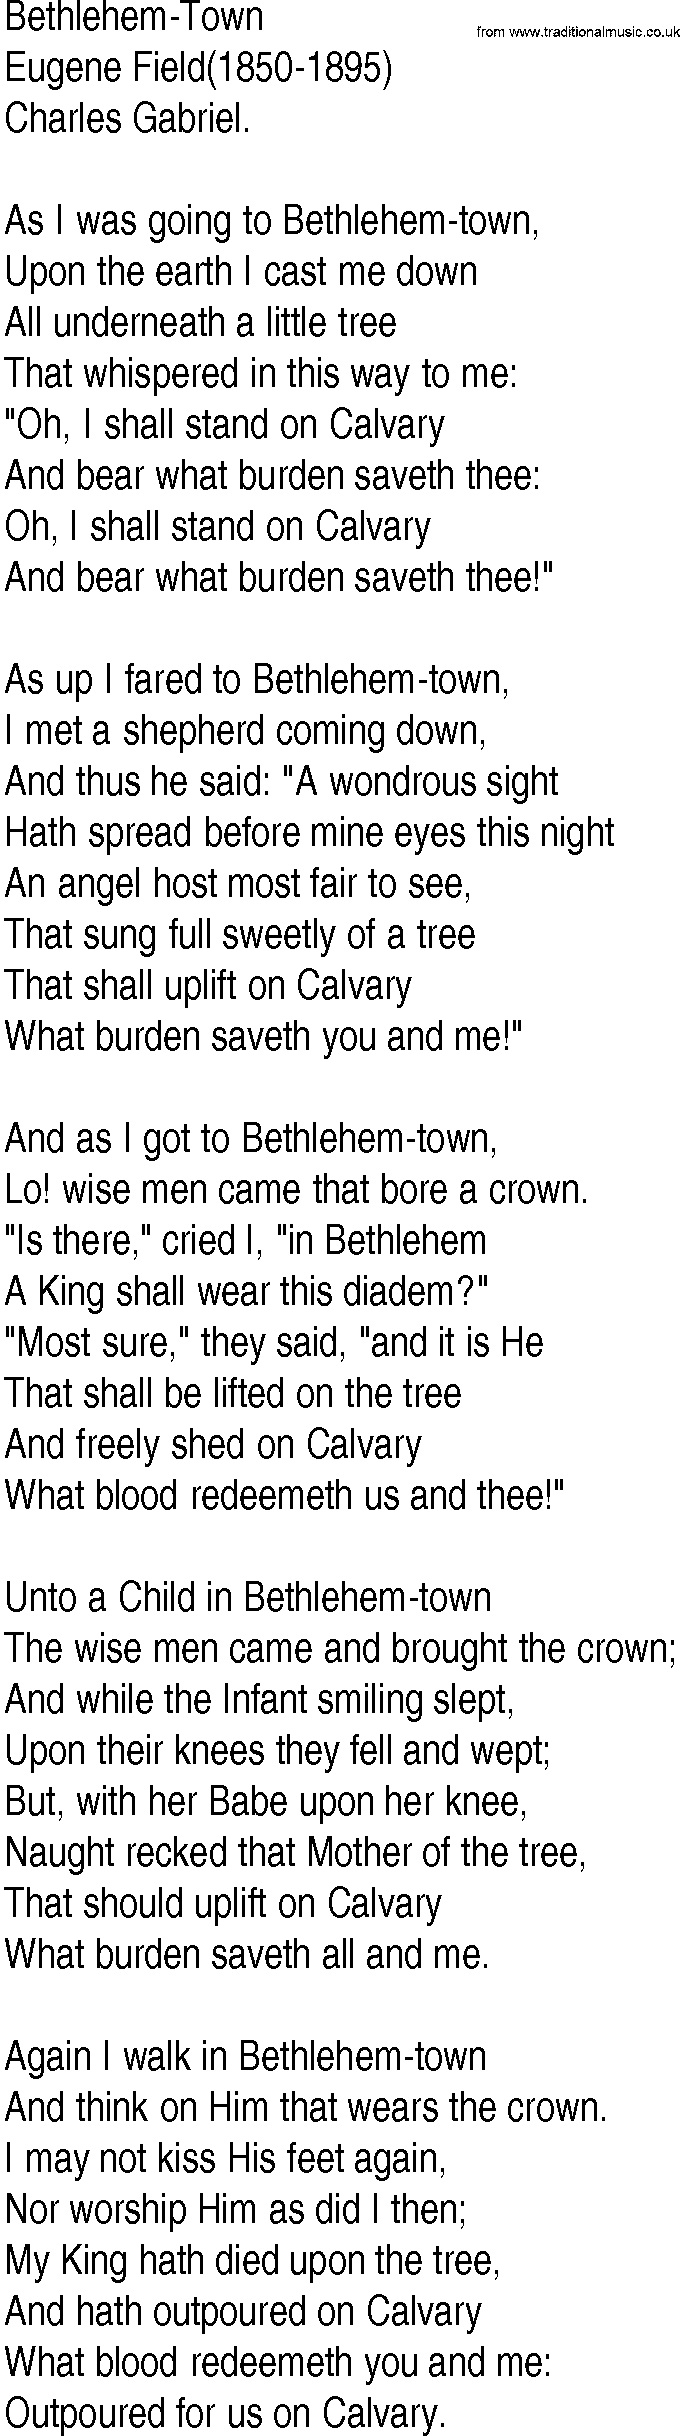 Hymn and Gospel Song: Bethlehem-Town by Eugene Field lyrics